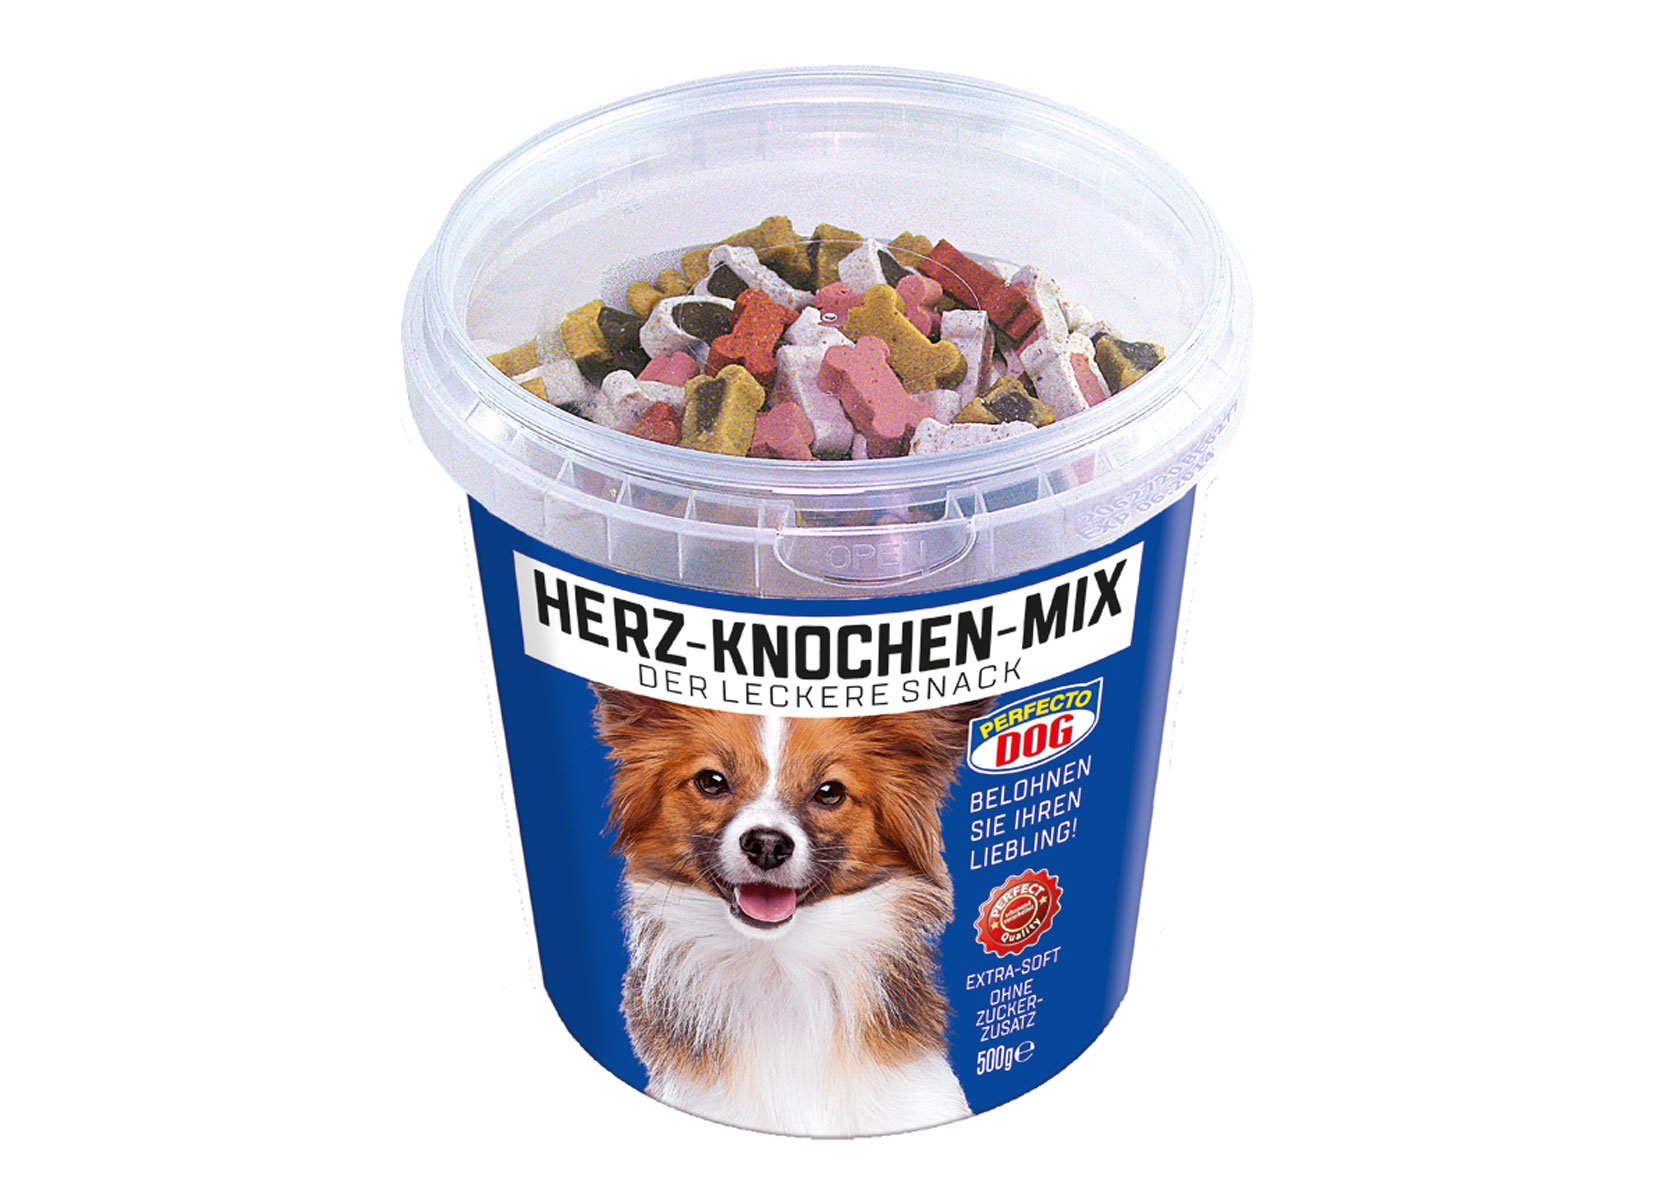 Perfecto Dog Herz-Knochen-Mix 500g